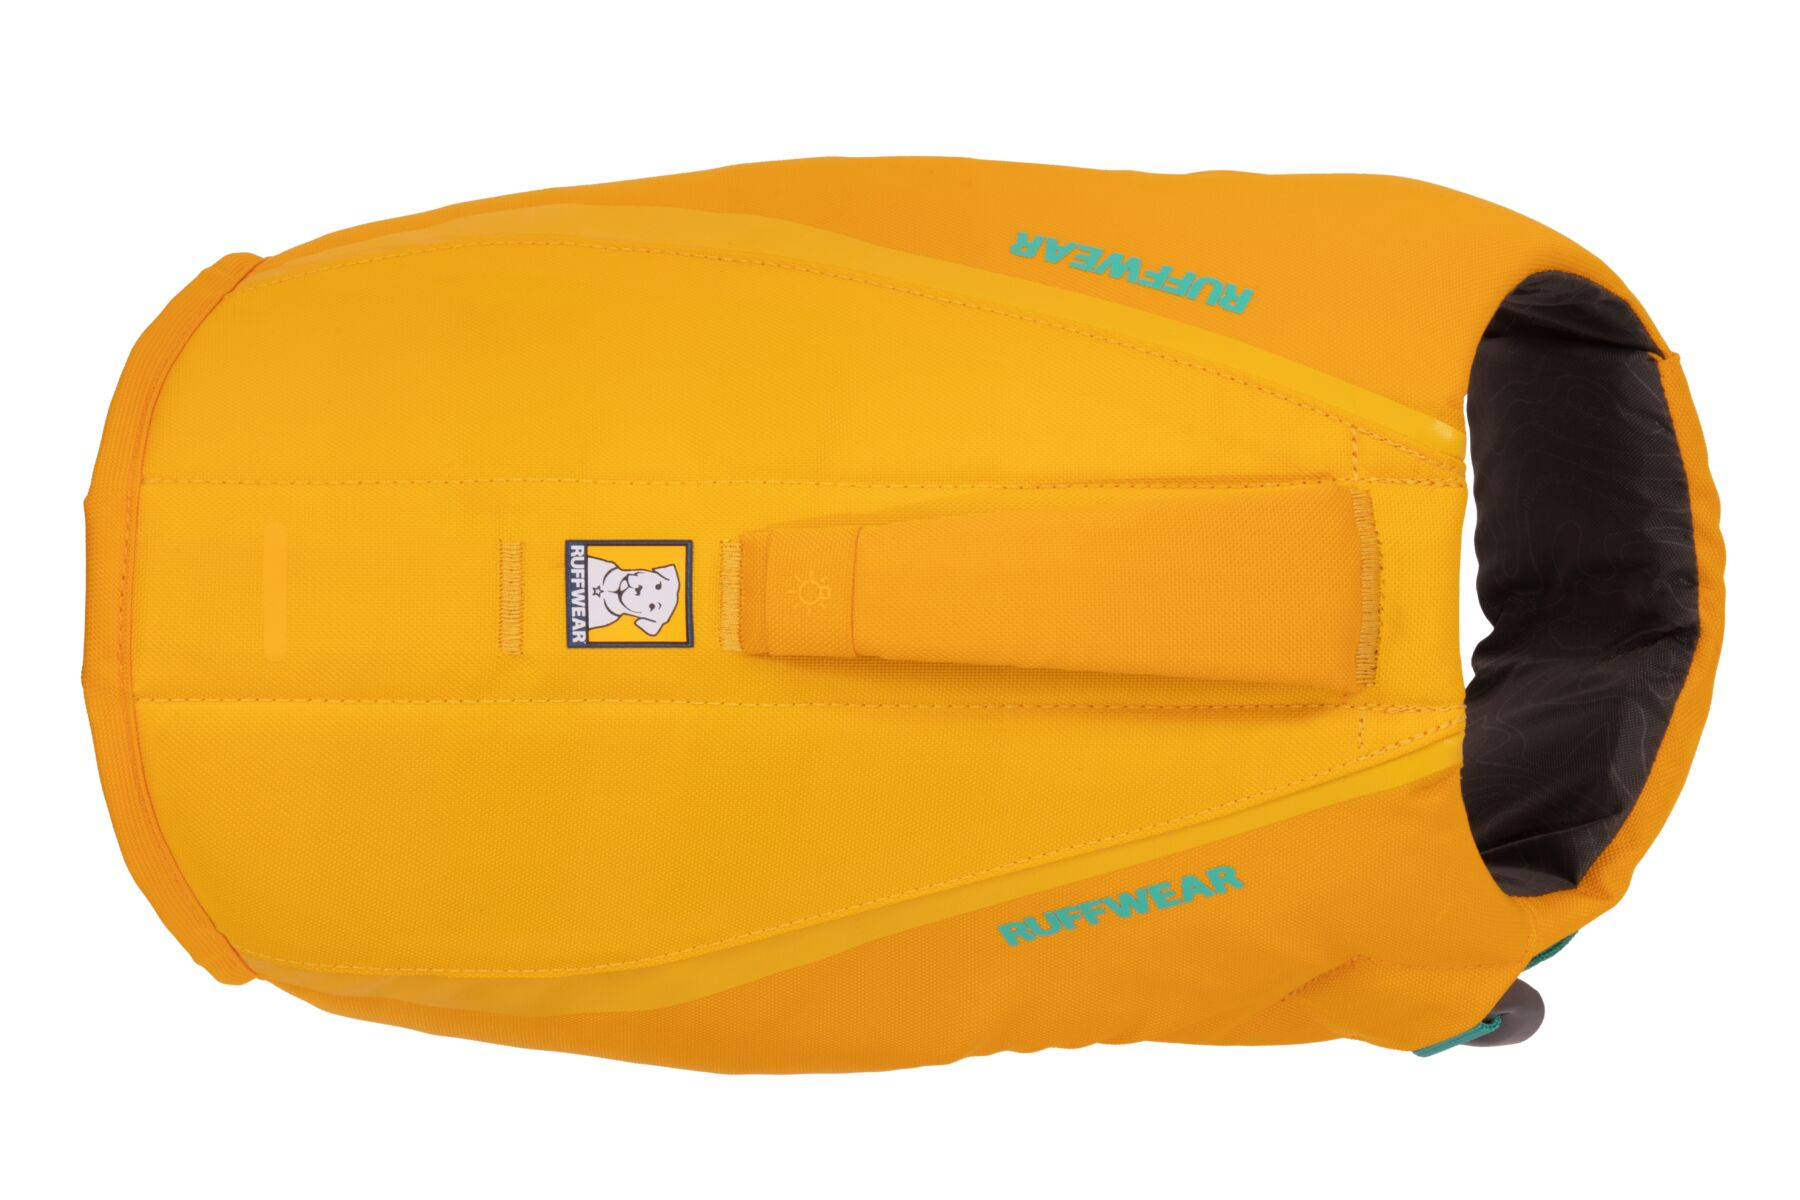 Float Coat Life Jacket Wave Orange de Ruffwear - plusieurs tailles disponibles